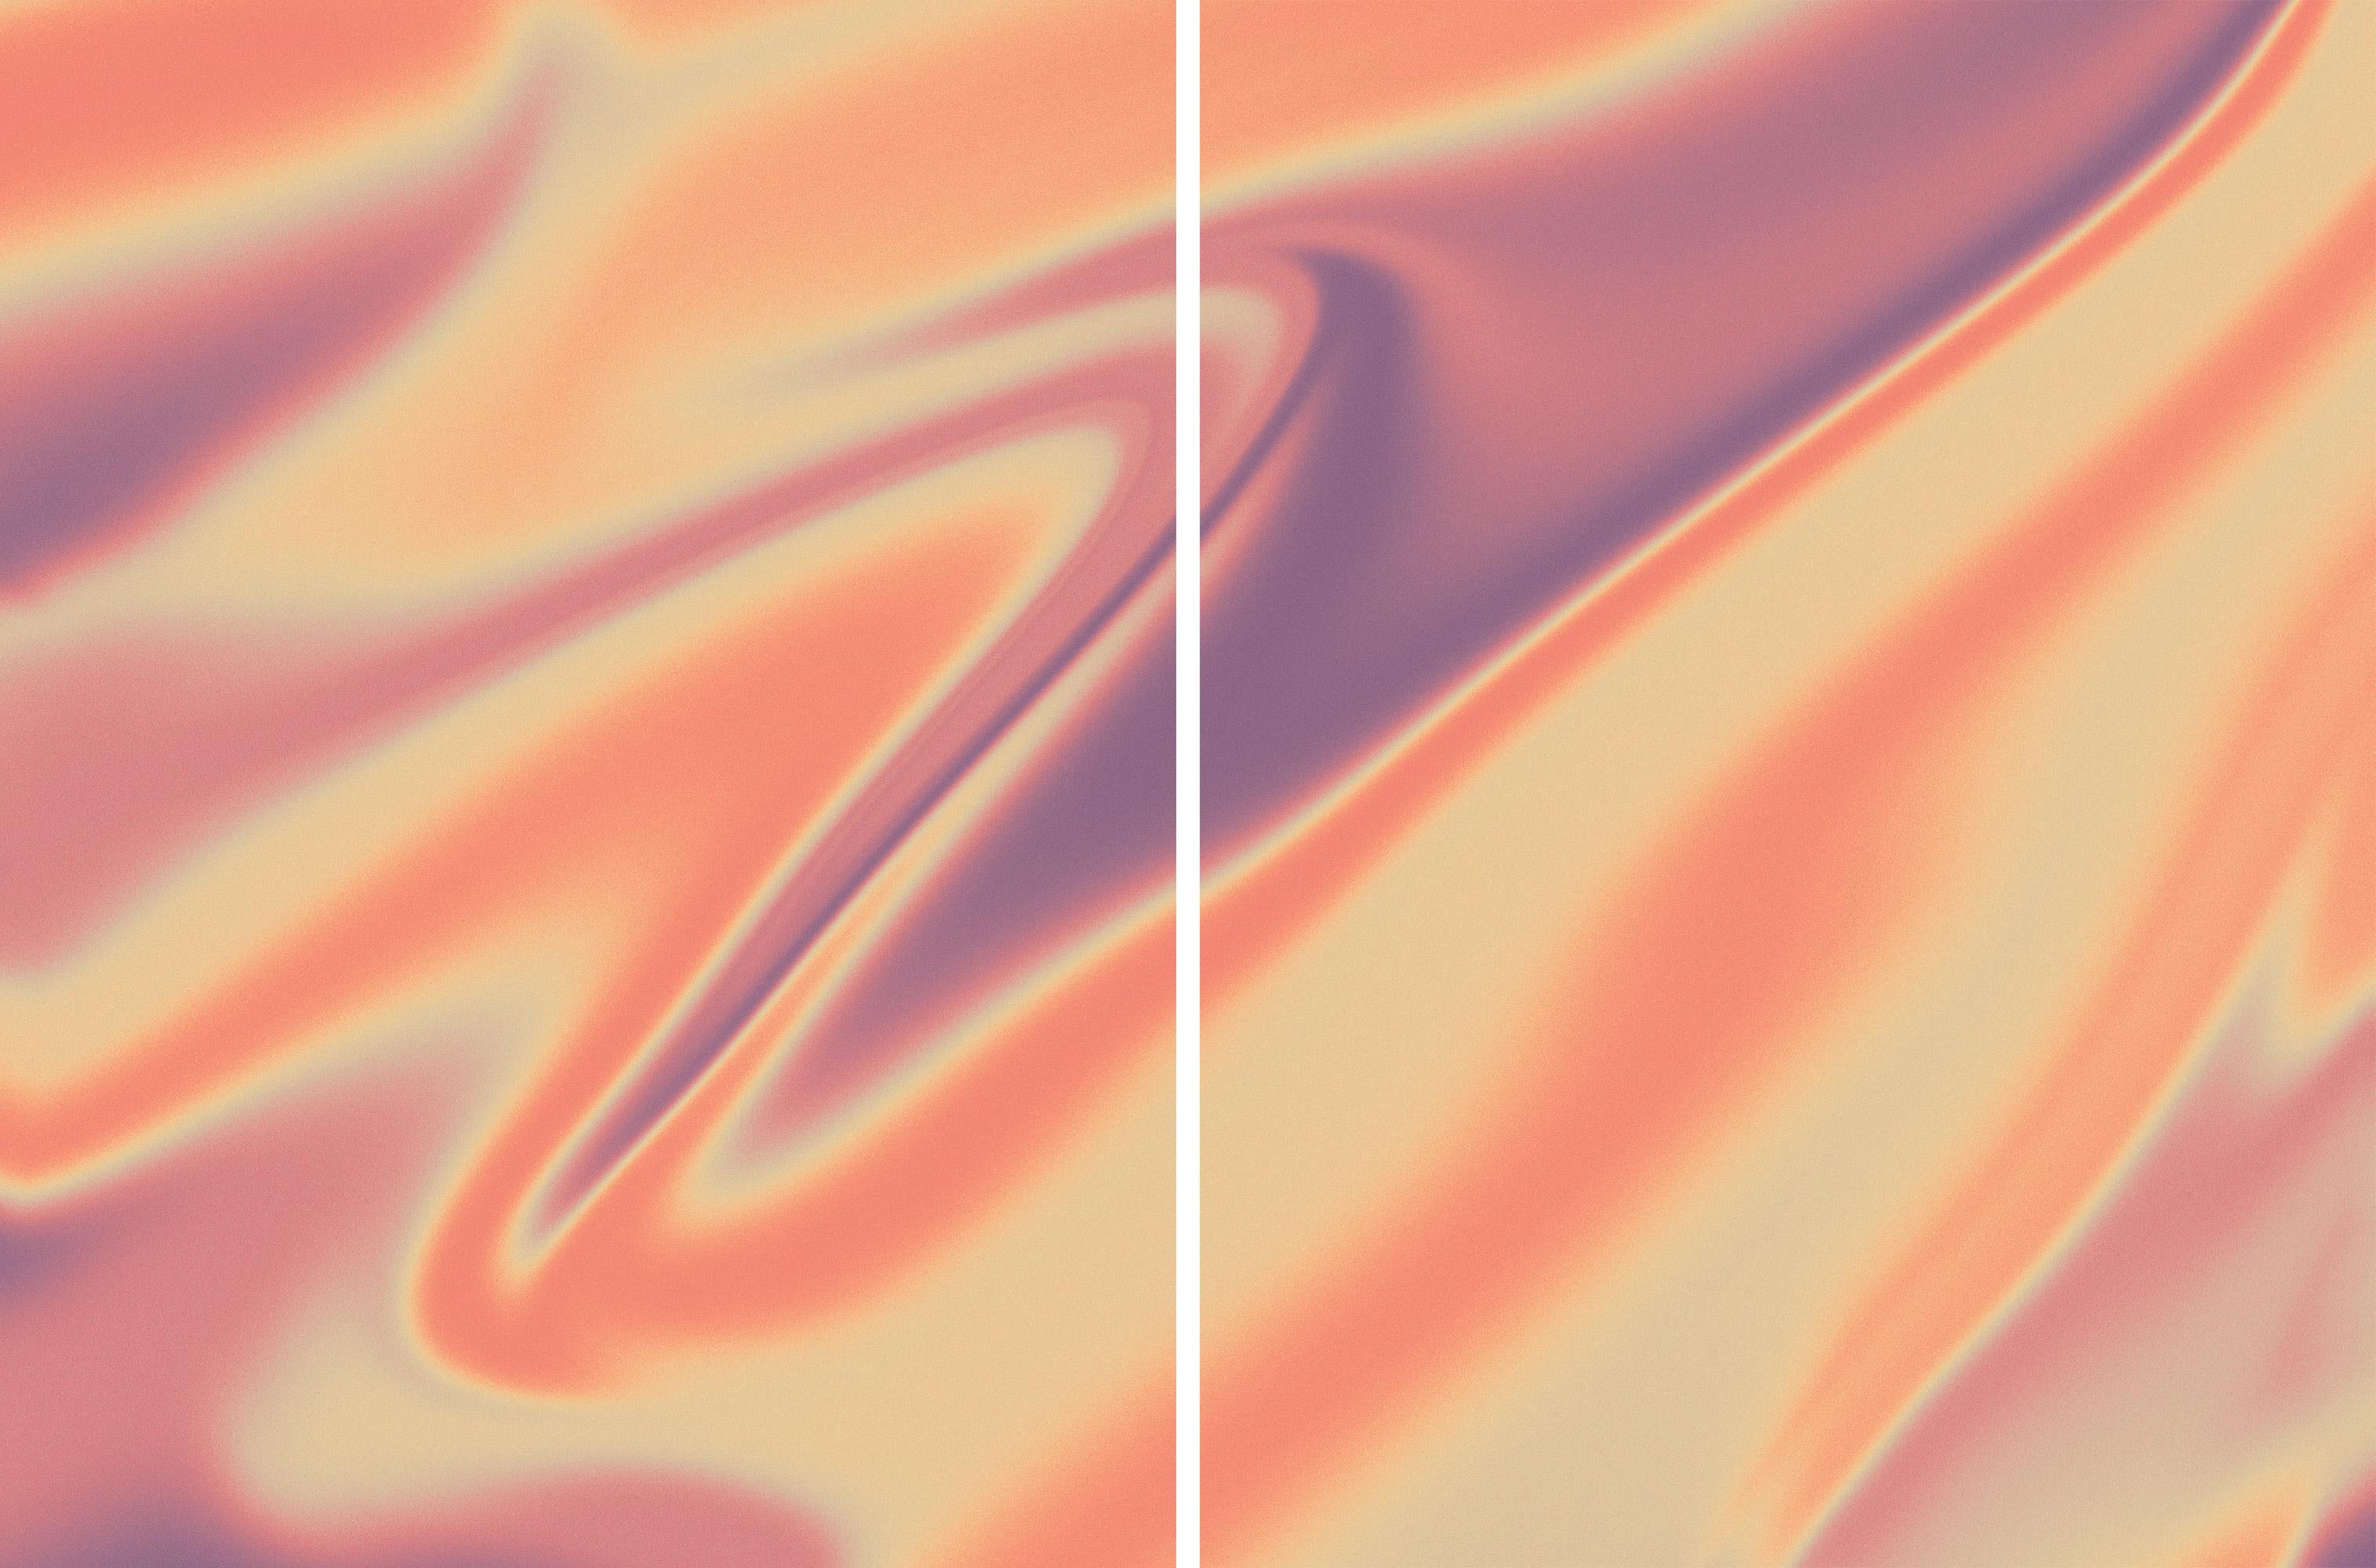 Ryan Rivadeneyra Abstract Print – Im Inneren von Jupiters Auge, marmorierte Formen in warmen Erdtönen Diptychon, Giclée-Druck